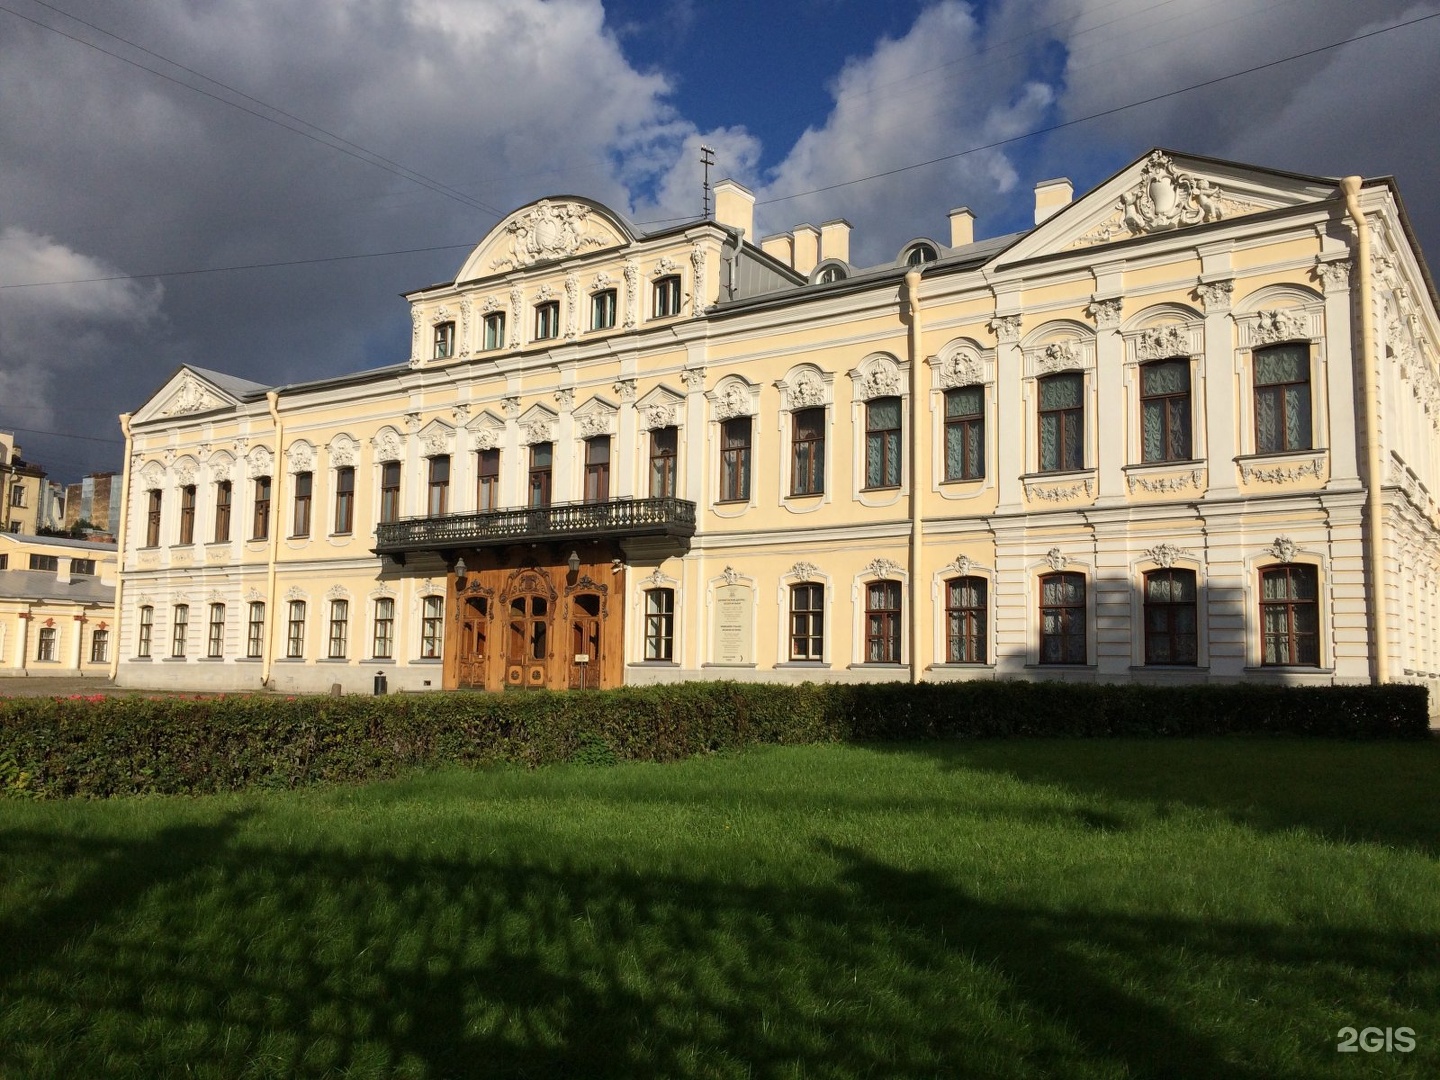 Шереметьевский дворец в санкт петербурге официальный сайт